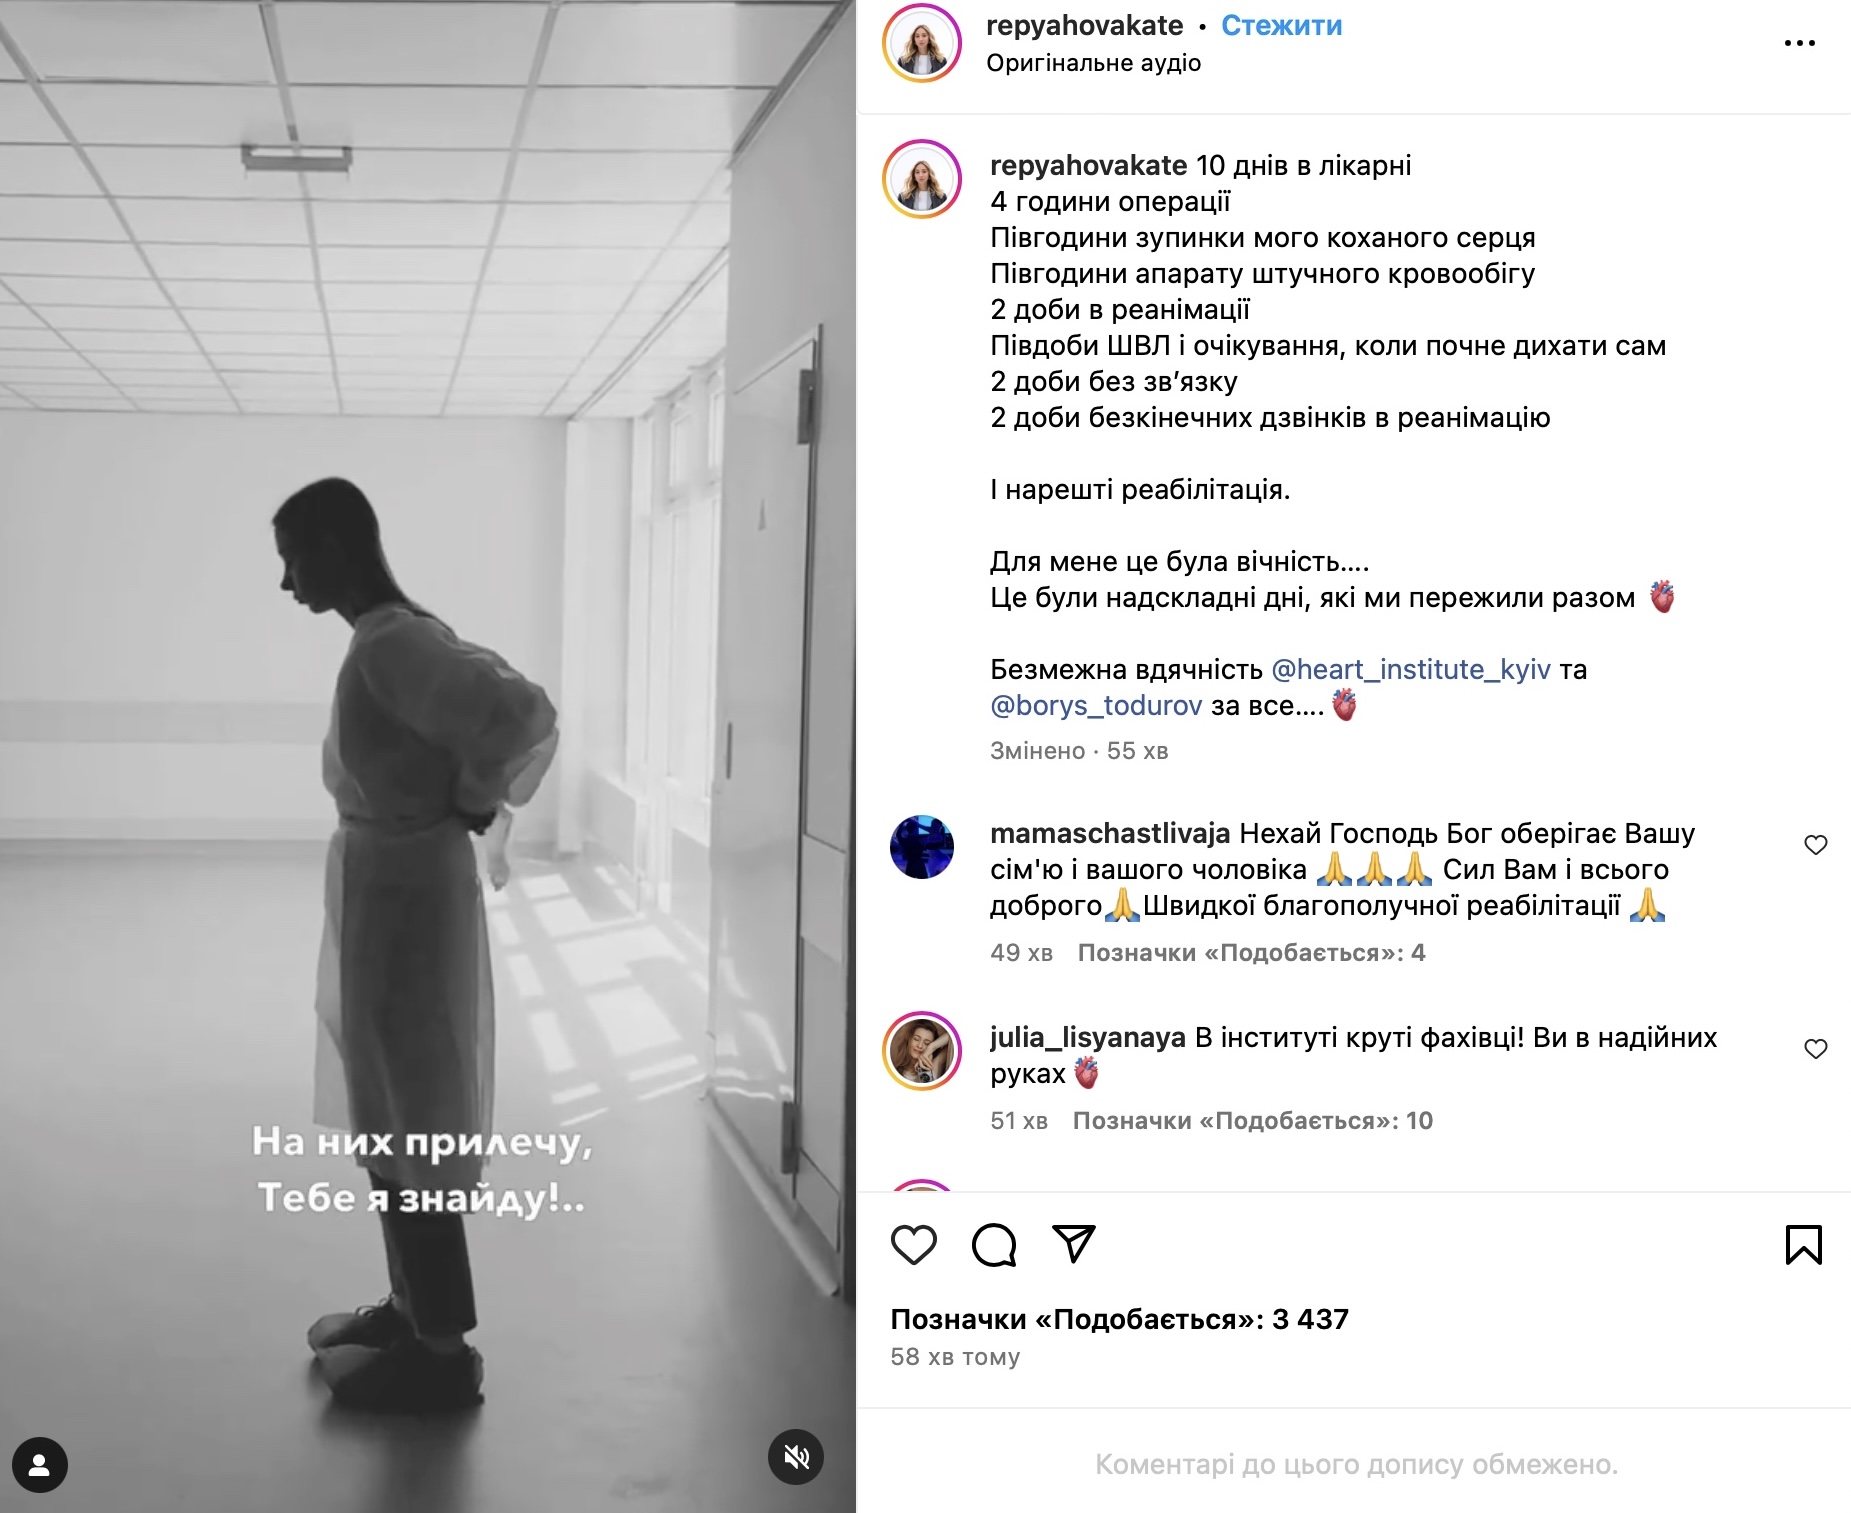 Дружина Віктора Павліка розповіла, що йому зробили операцію на серці. Фото з Instagram @repyahovakate